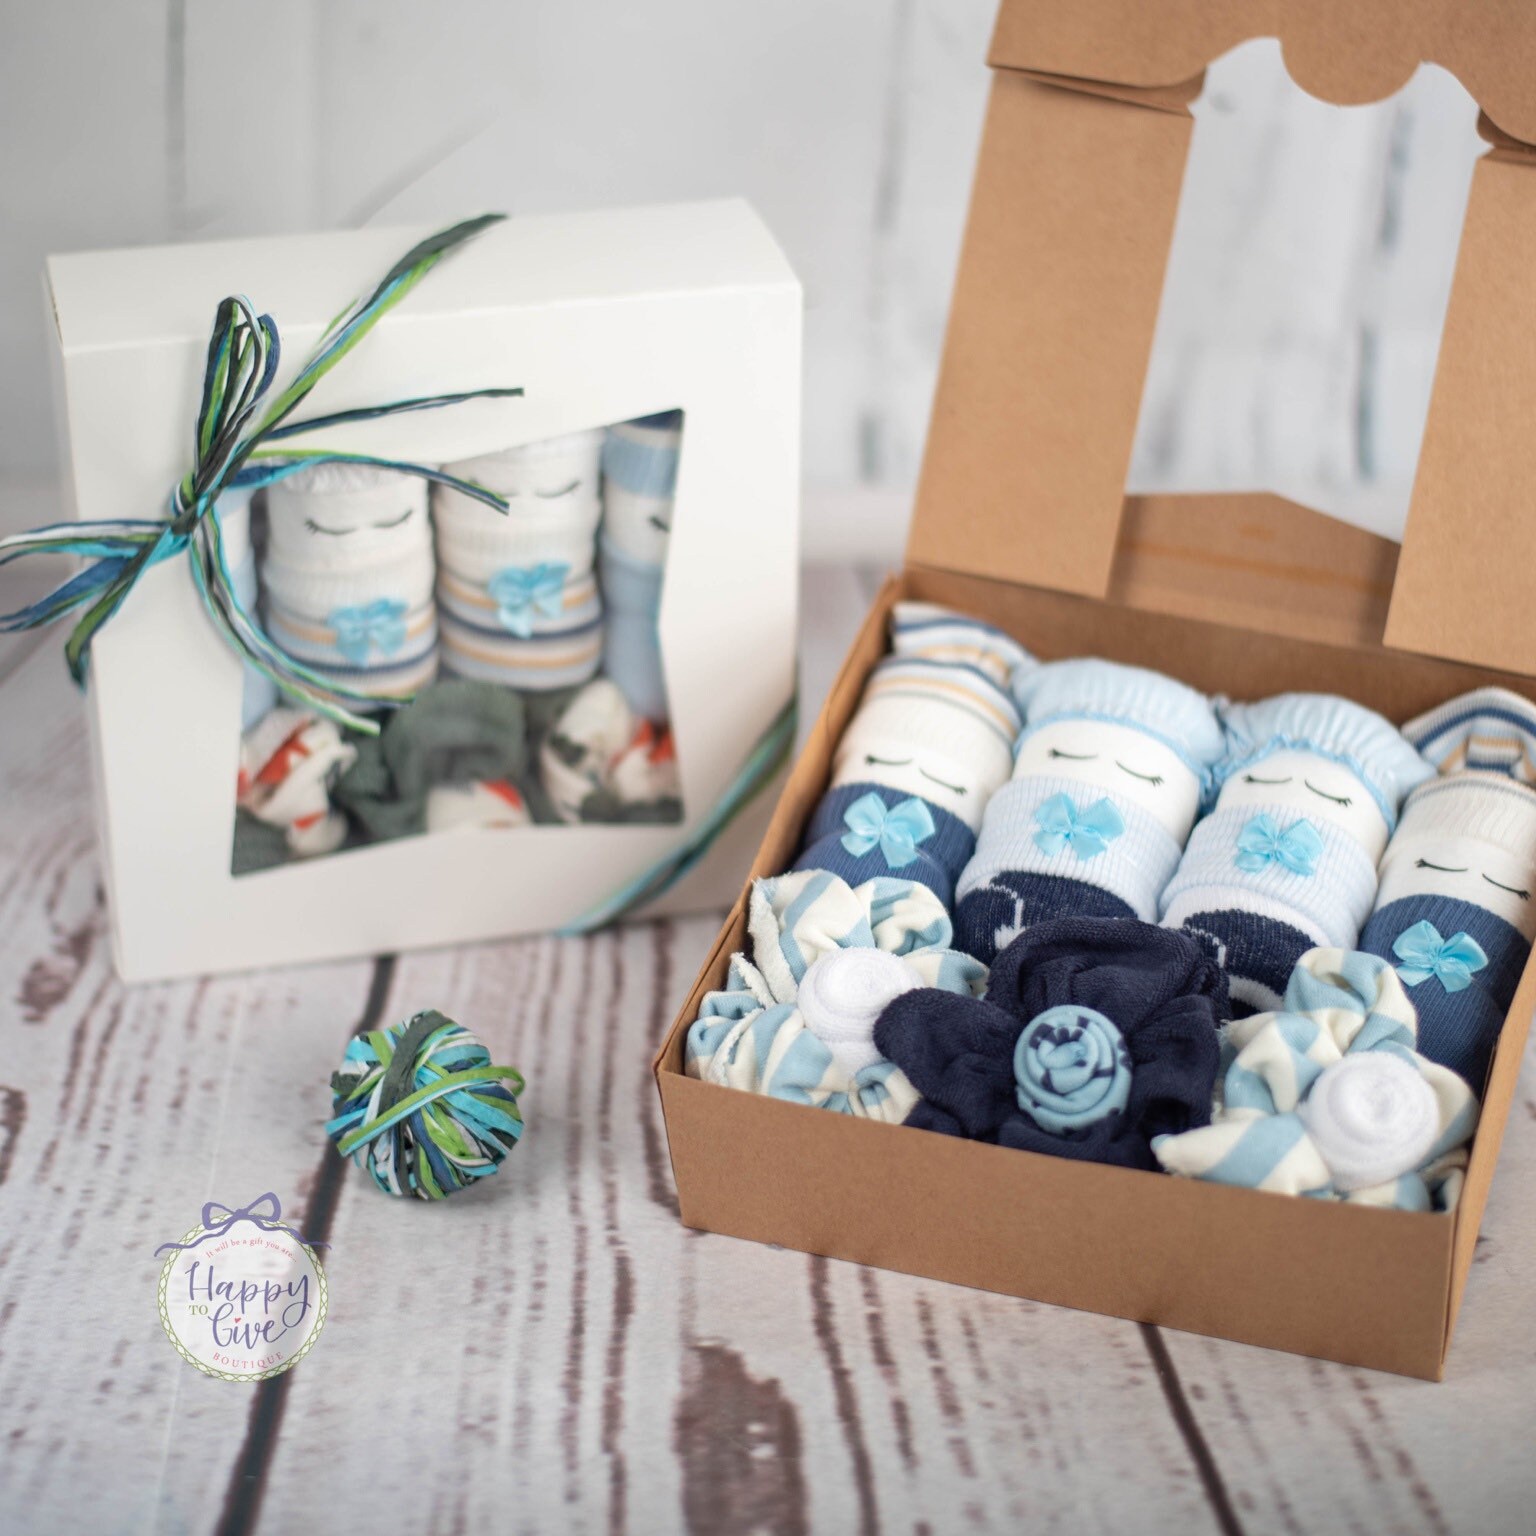 Buy Baby Boy Gift Basket, Newborn Boys Bodysuits Cupcake Essential Shower  Gift Set Online at desertcartDenmark